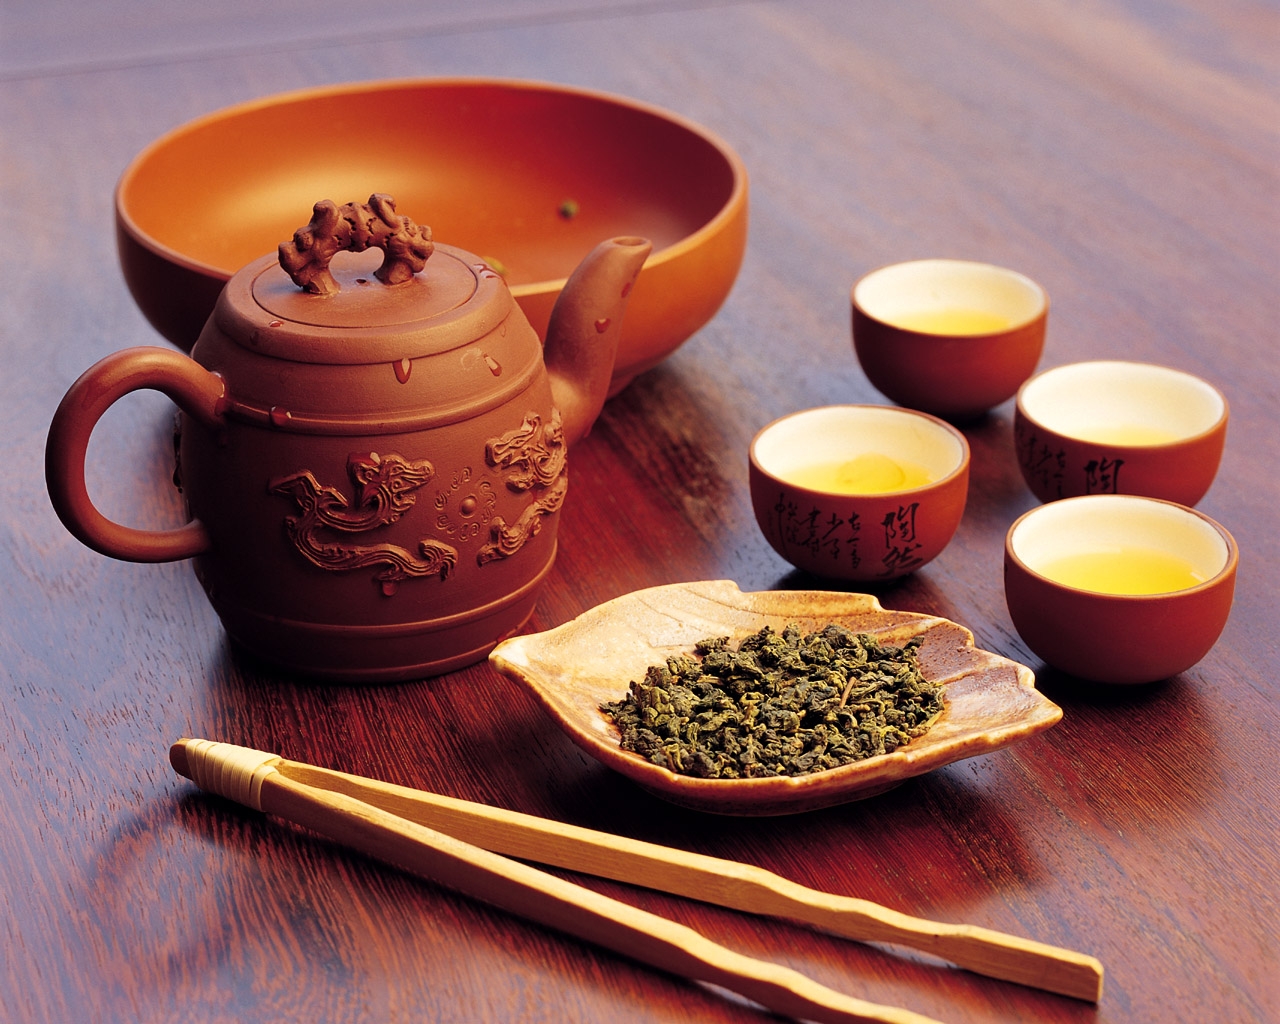 Перед подачей блюда китайцы обязательно приносят зеленый чай